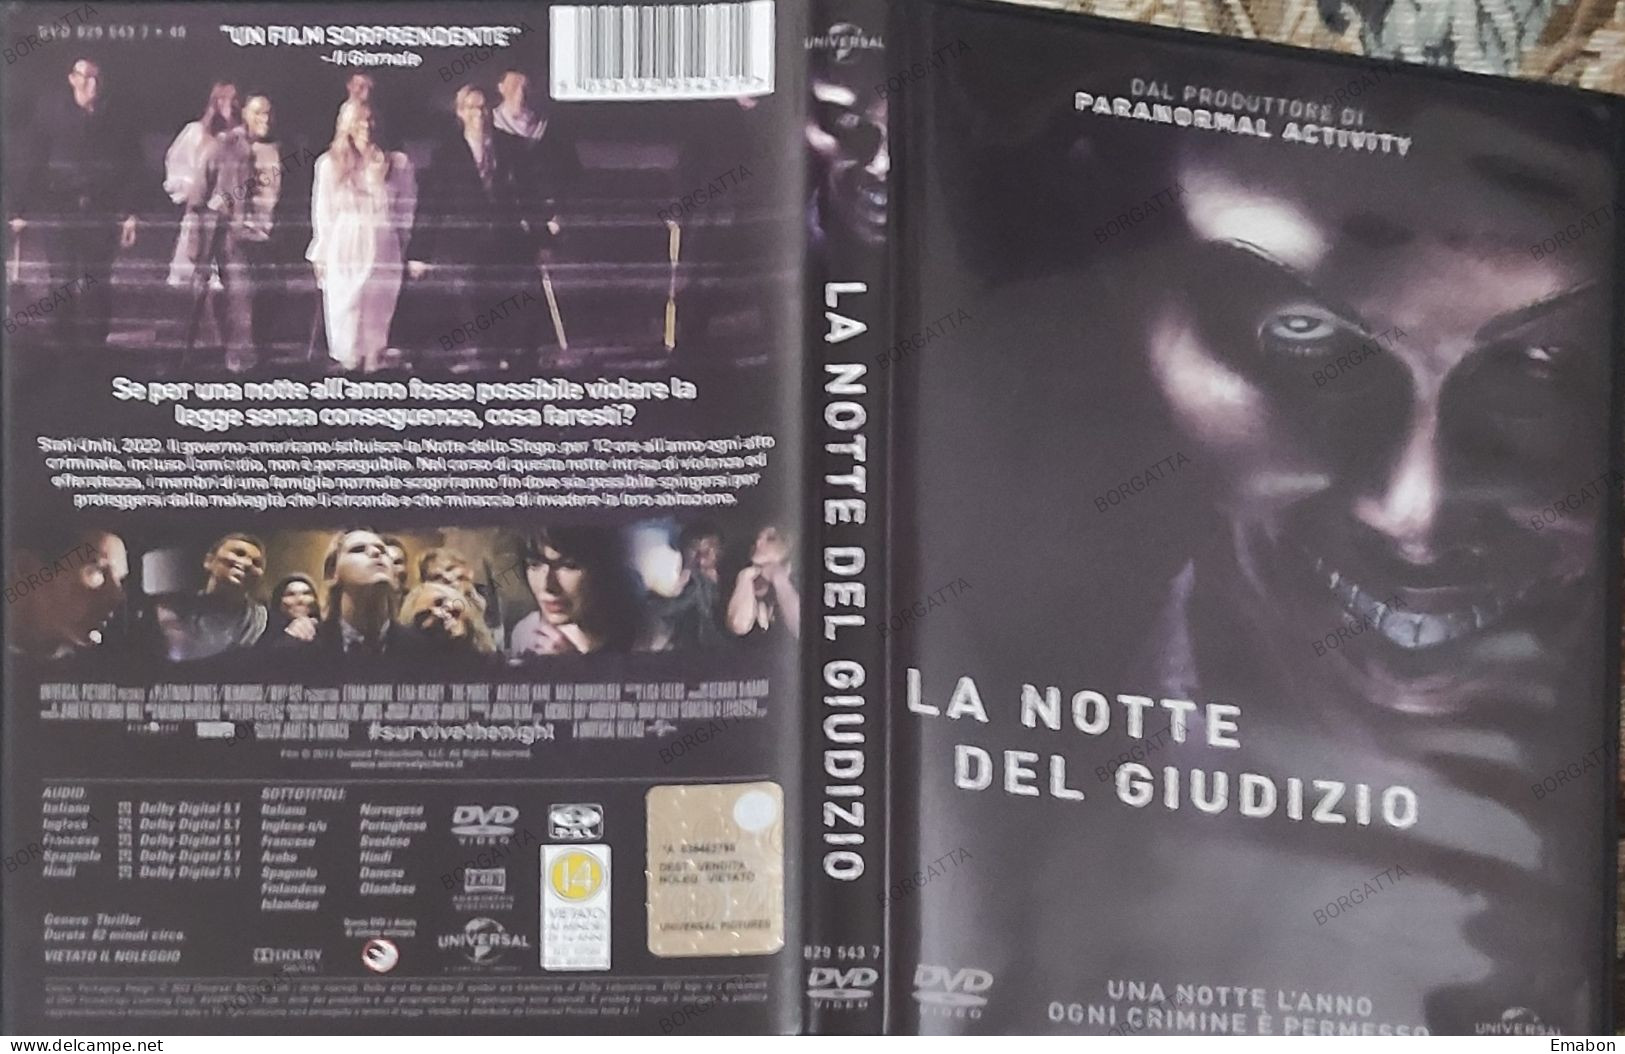 BORGATTA - DRAMMA - Dvd  " LA NOTTE DEL GIUDIZIO "ETHAN HAWKE,- PAL 2 - UNIVERSAL 2013-  USATO In Buono Stato - Drama